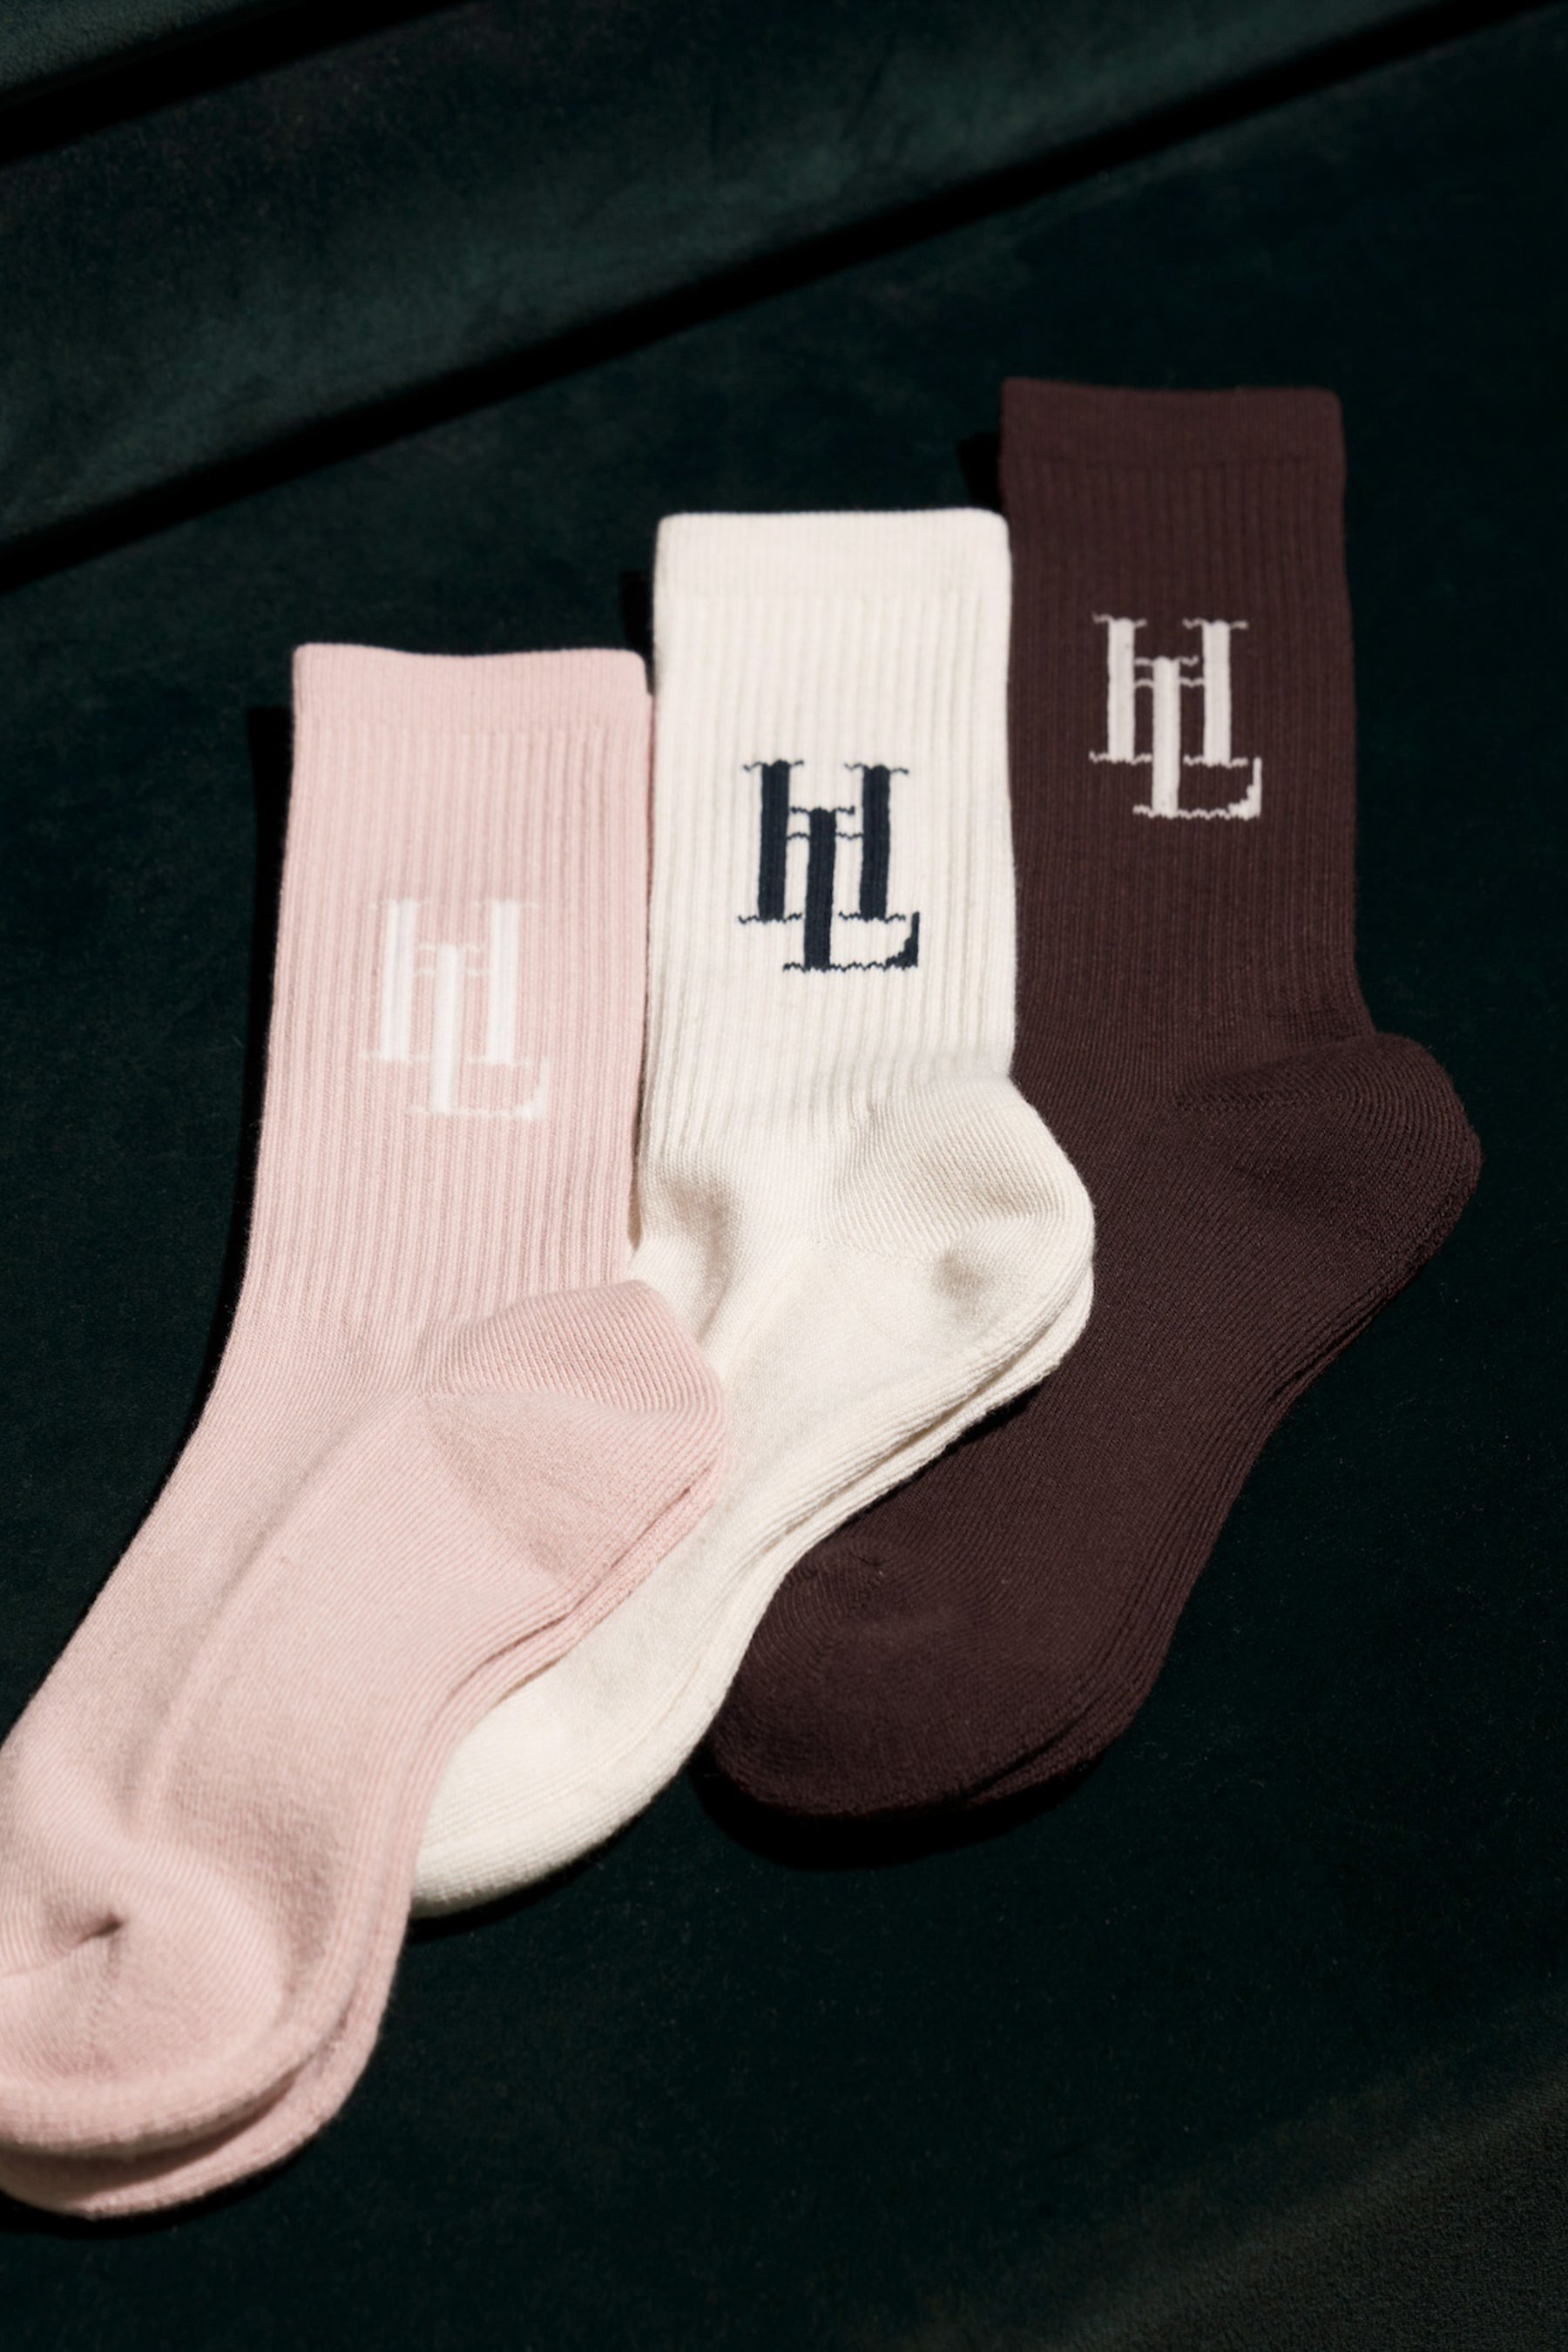 HLT Lounge Socks